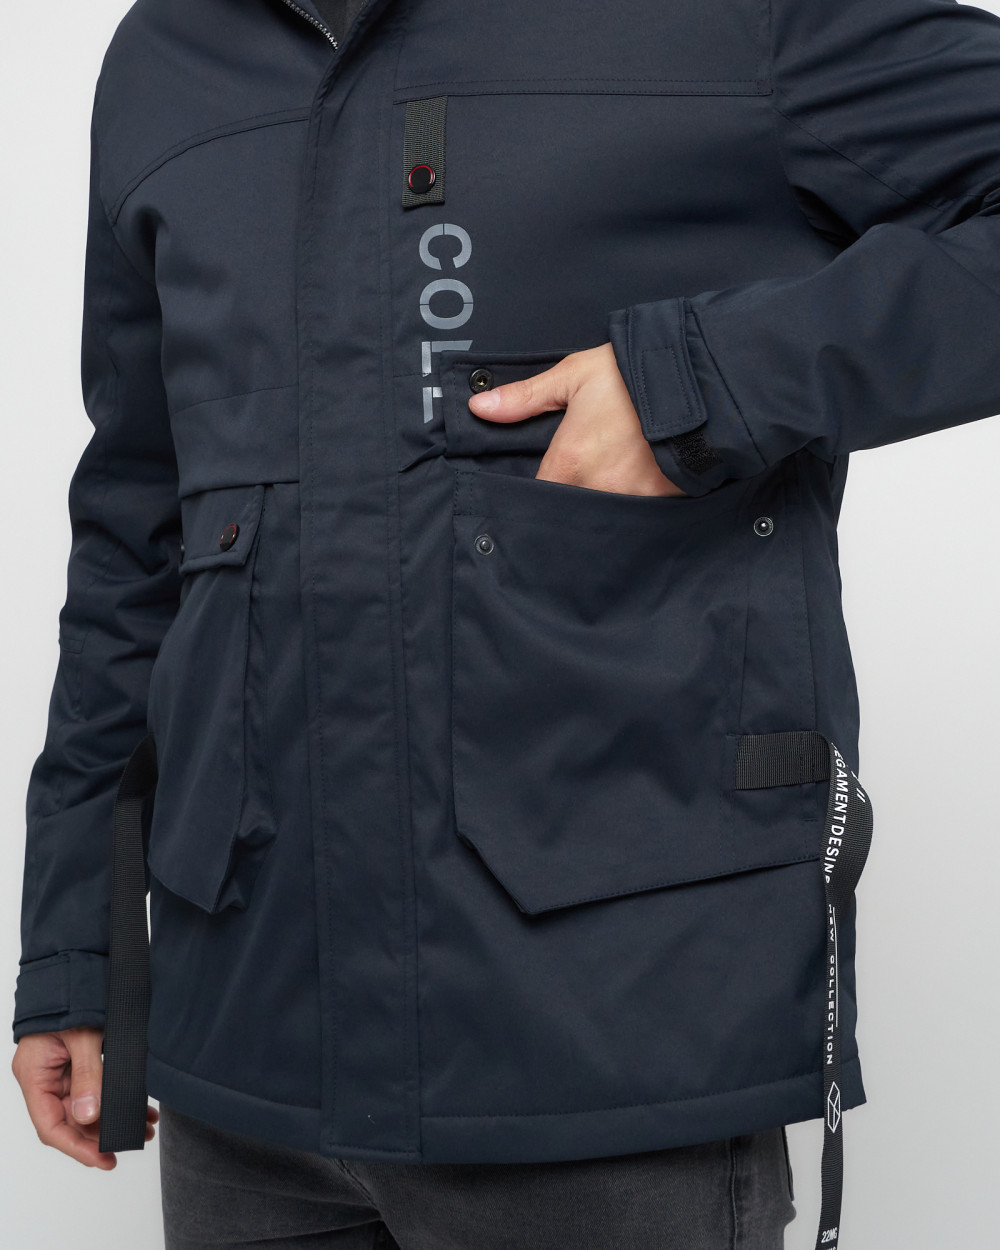 Купить куртку мужскую спортивную весеннюю оптом от производителя недорого в Москве 8600TS 1